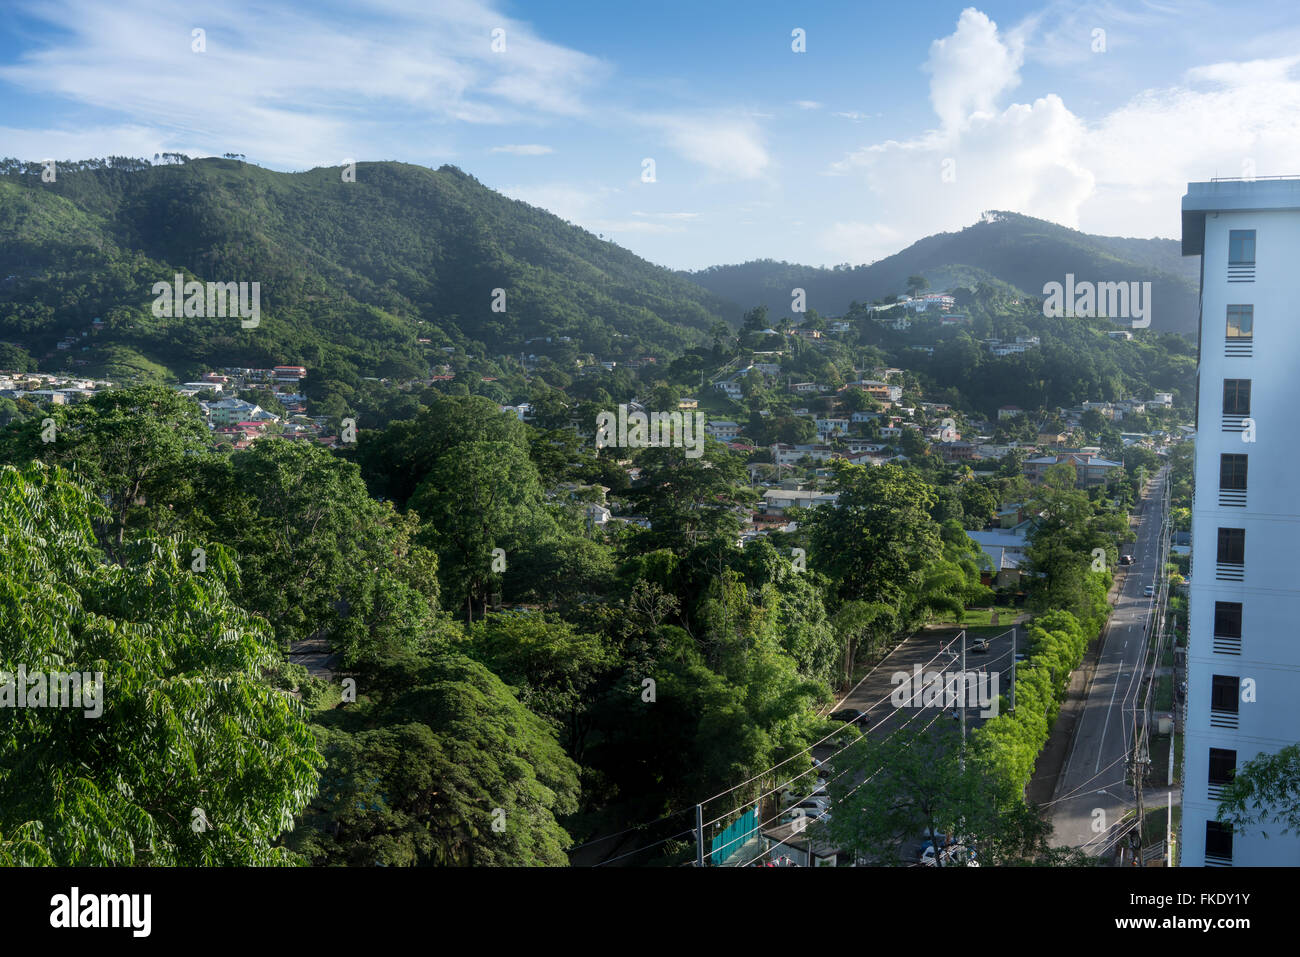 Angolo di alta vista di una città a lato della montagna, Trinidad, Trinidad e Tobago Foto Stock